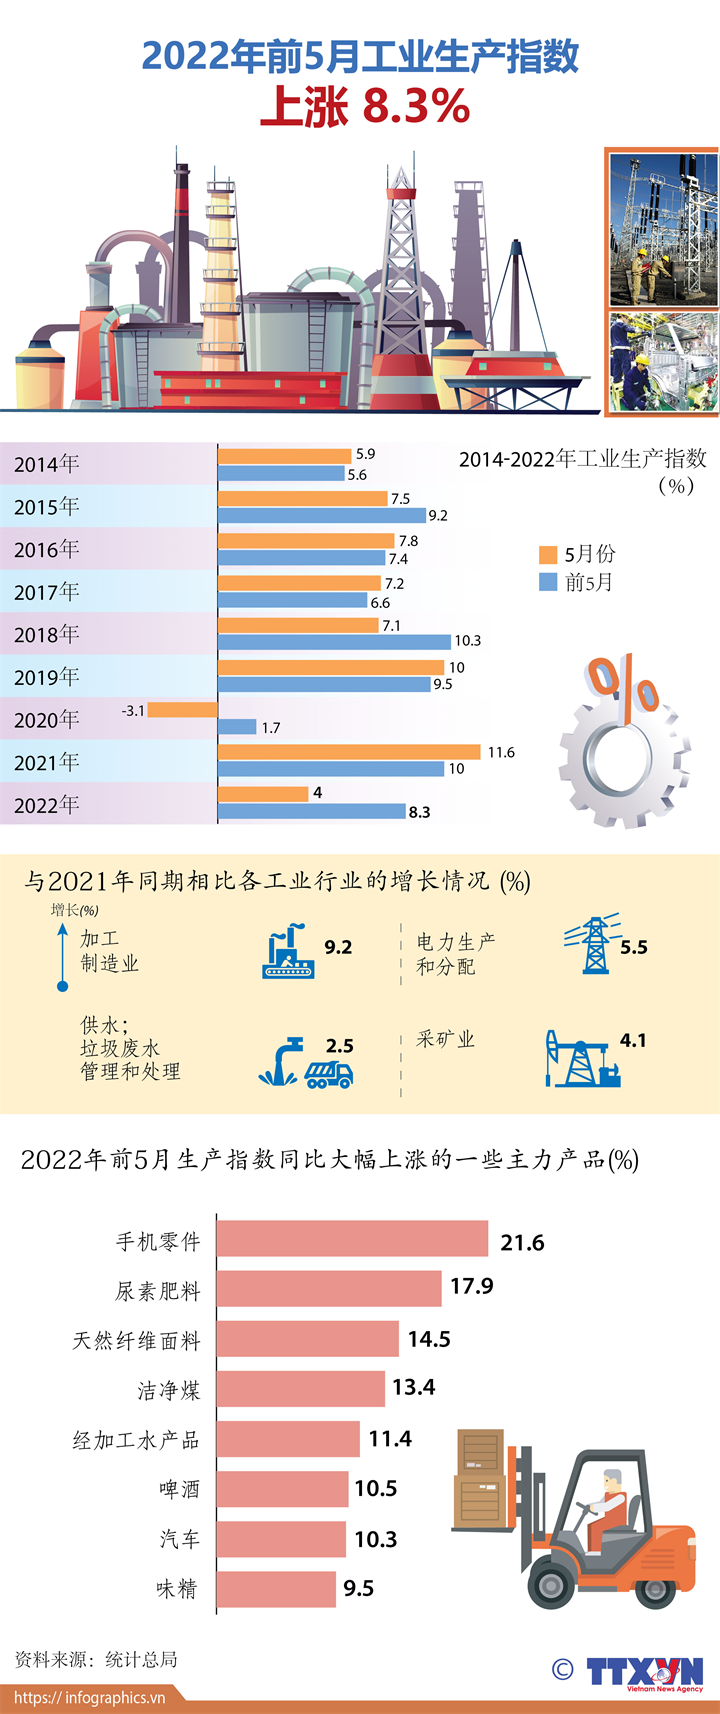 2022年前5月工业生产指数上涨8.3%